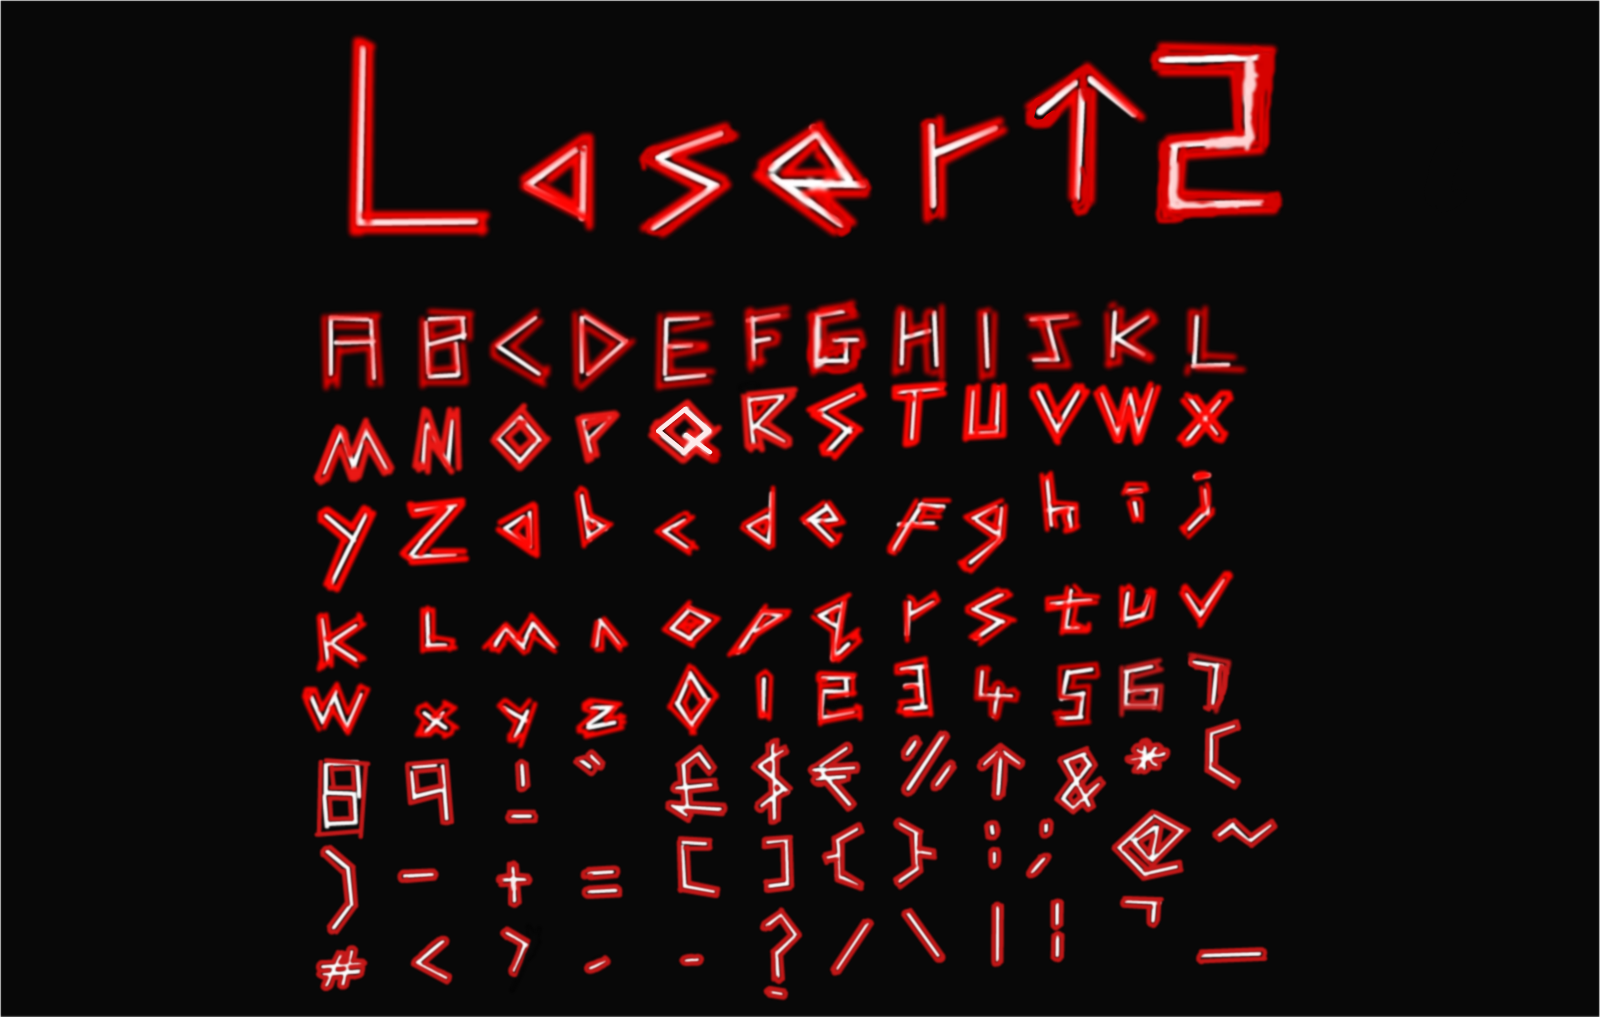 Font Challenge; Laser^2